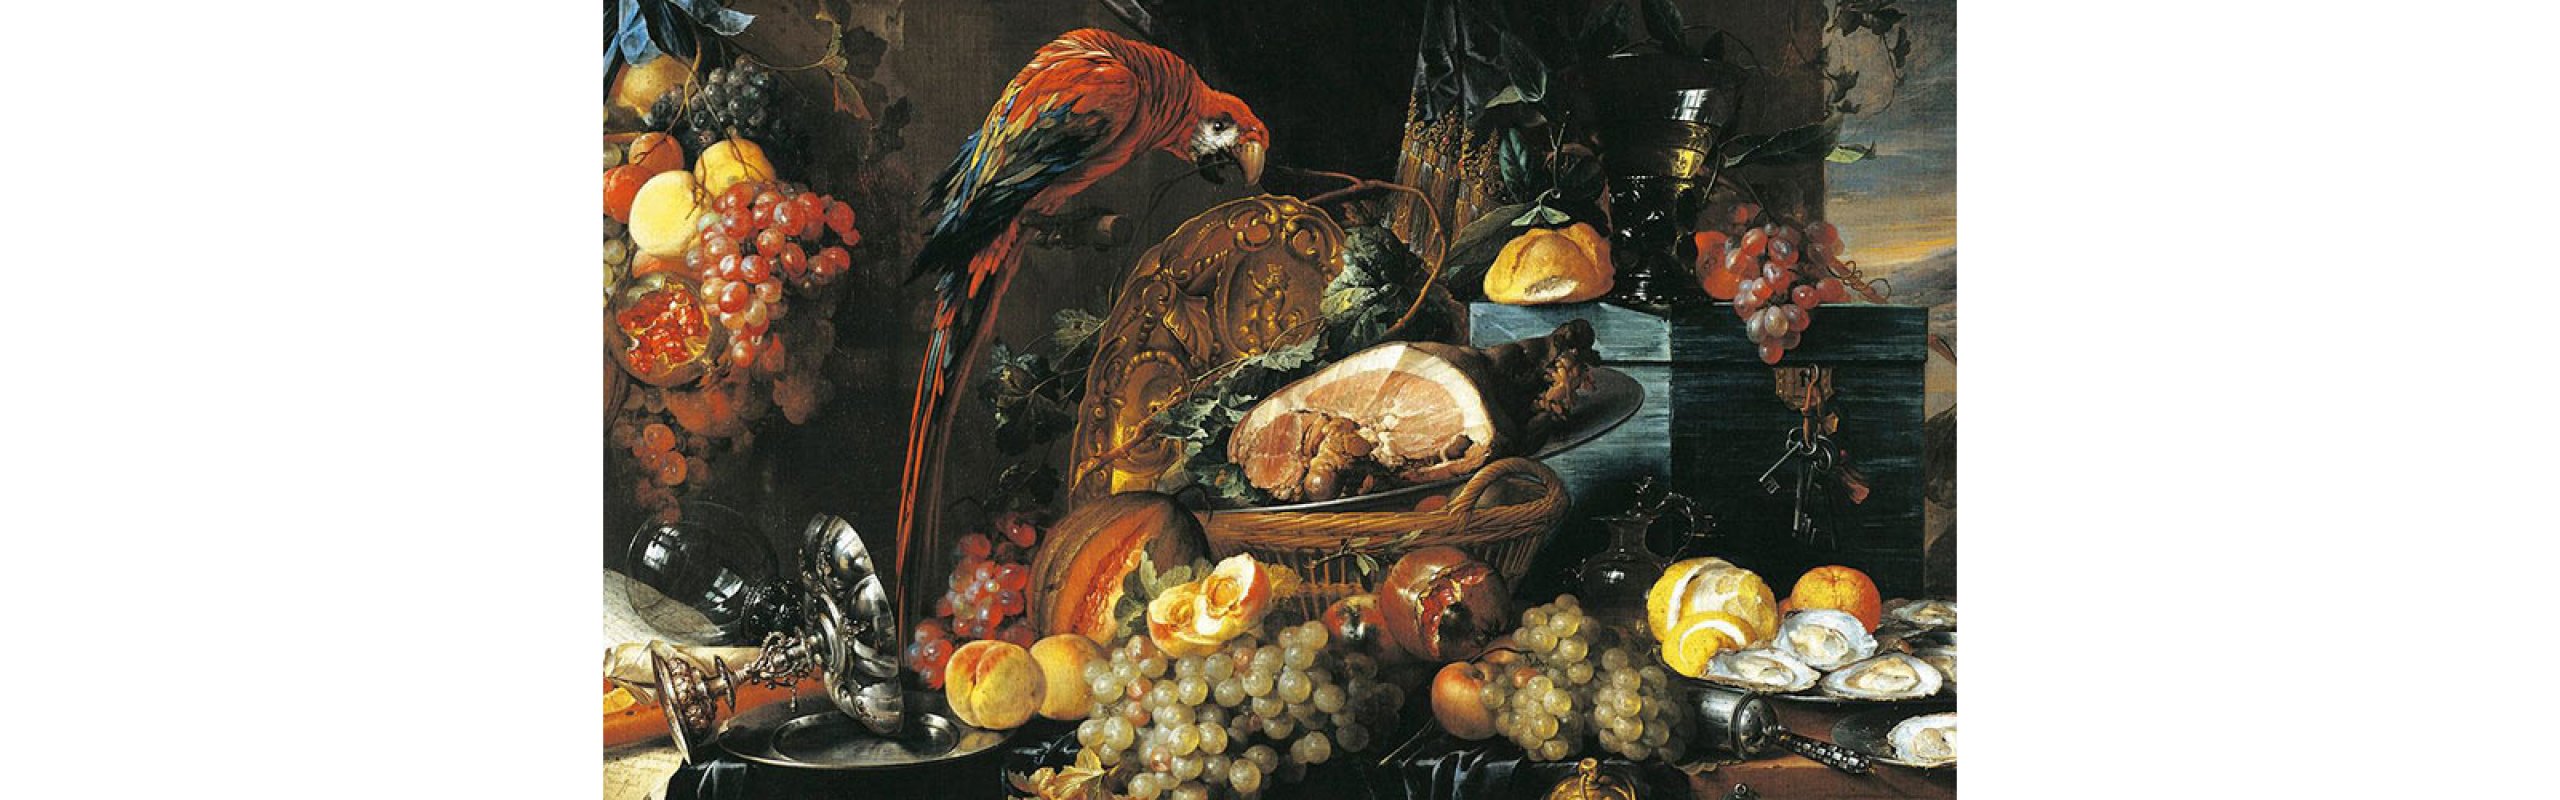 Renaissance food and banqueting